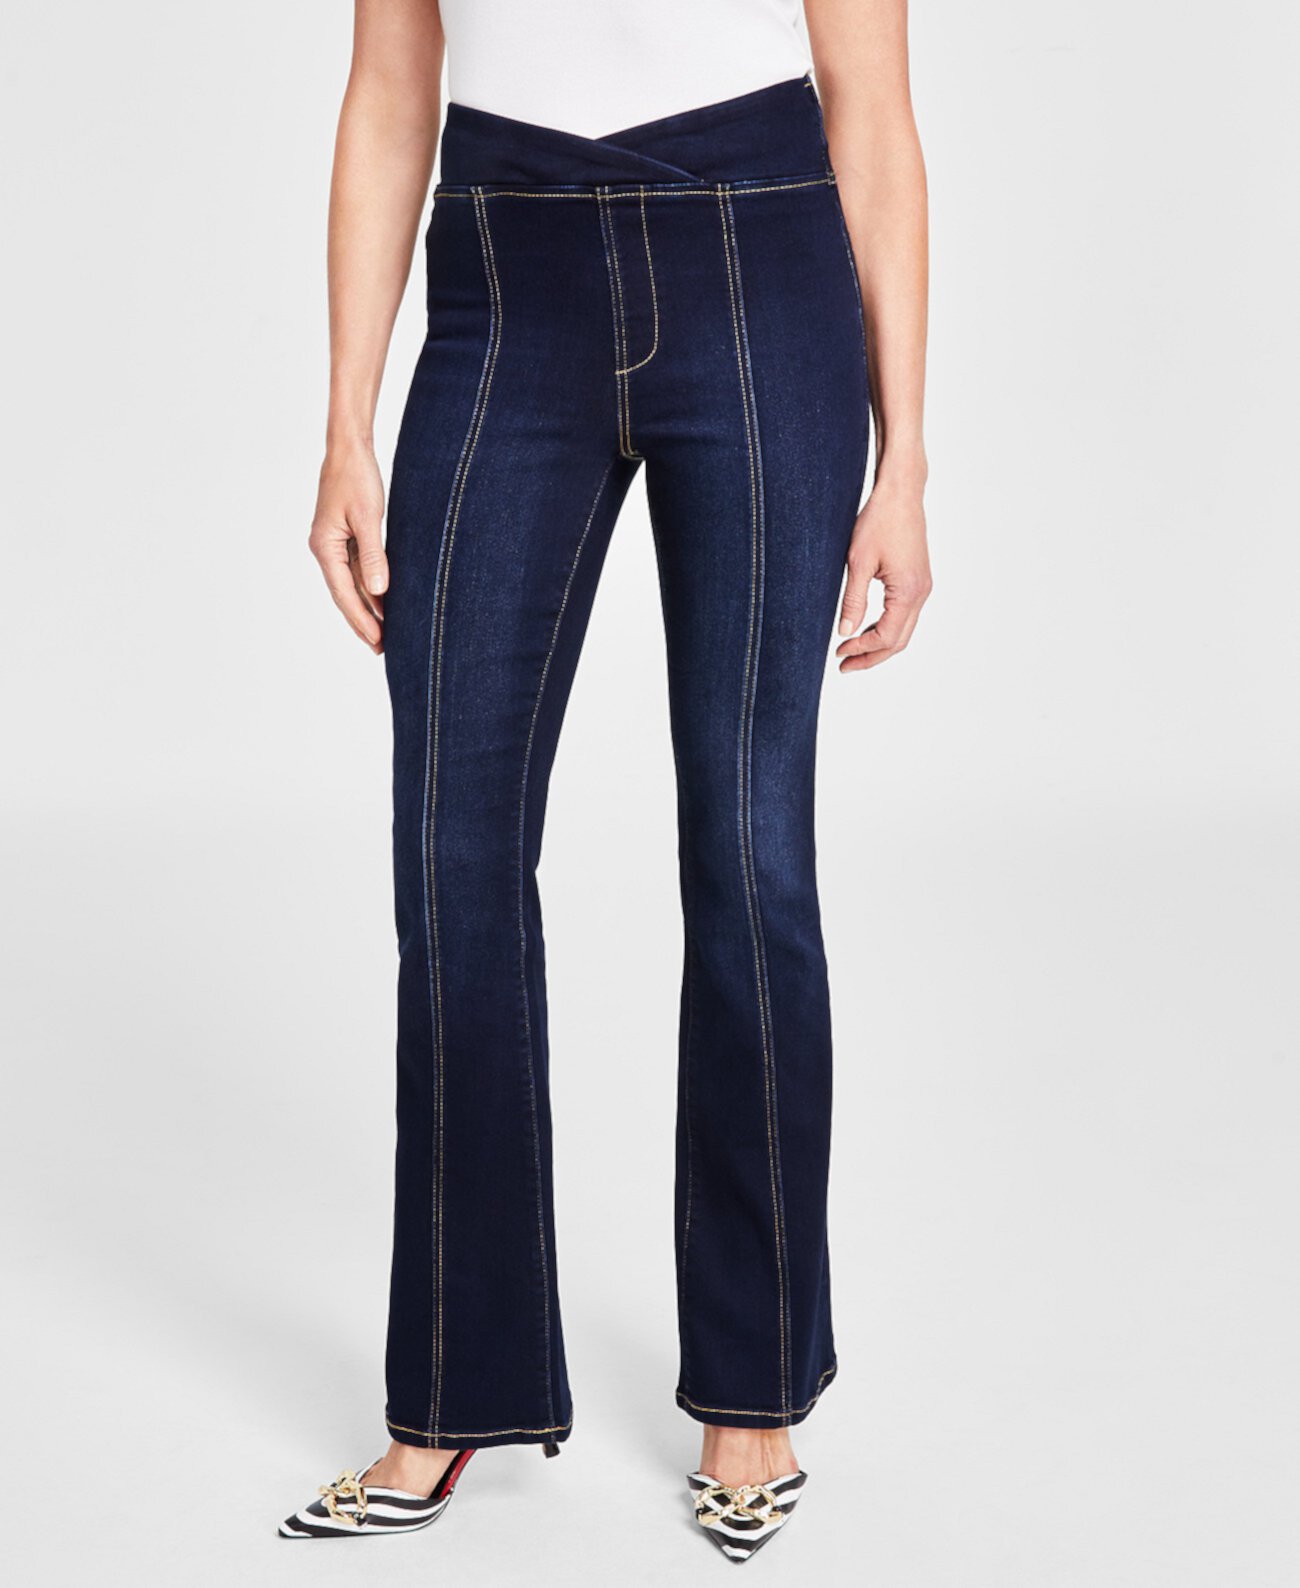 Женские джинсы Bootcut с высокой посадкой и асимметричными швами, созданные для Macy's I.N.C. International Concepts